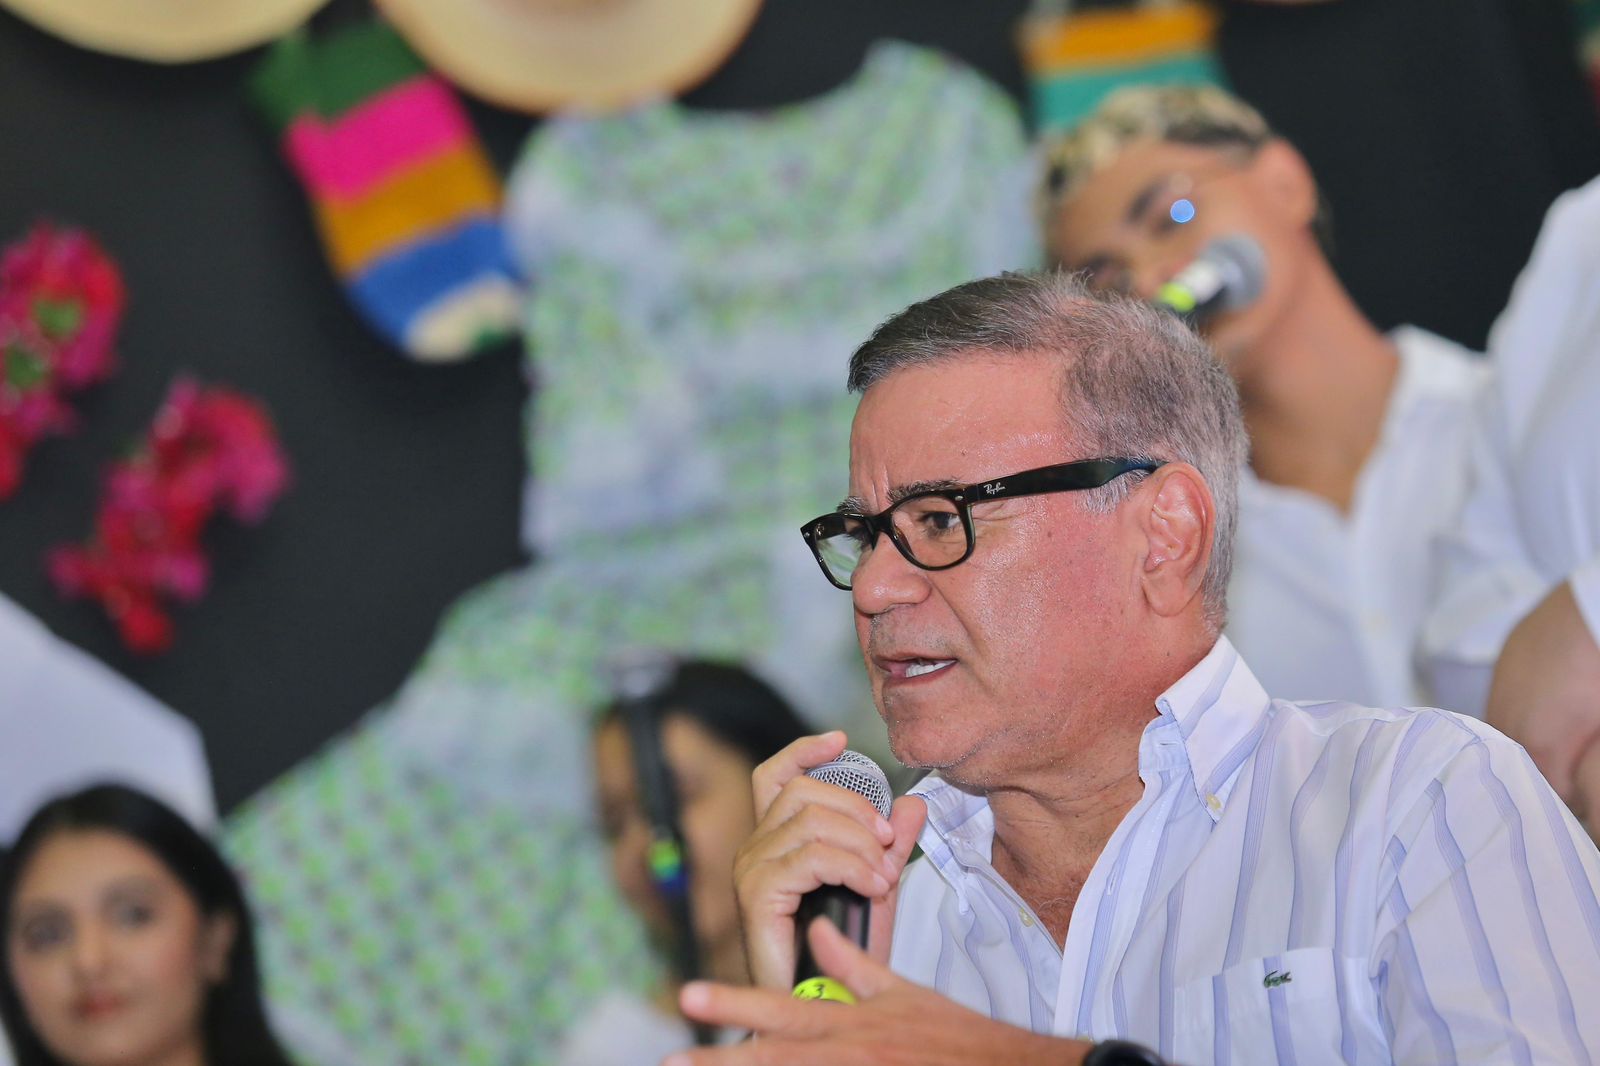 Niños llenaron de sentimiento a Iván Villazón durante conversatorio en la Casa de la Cultura